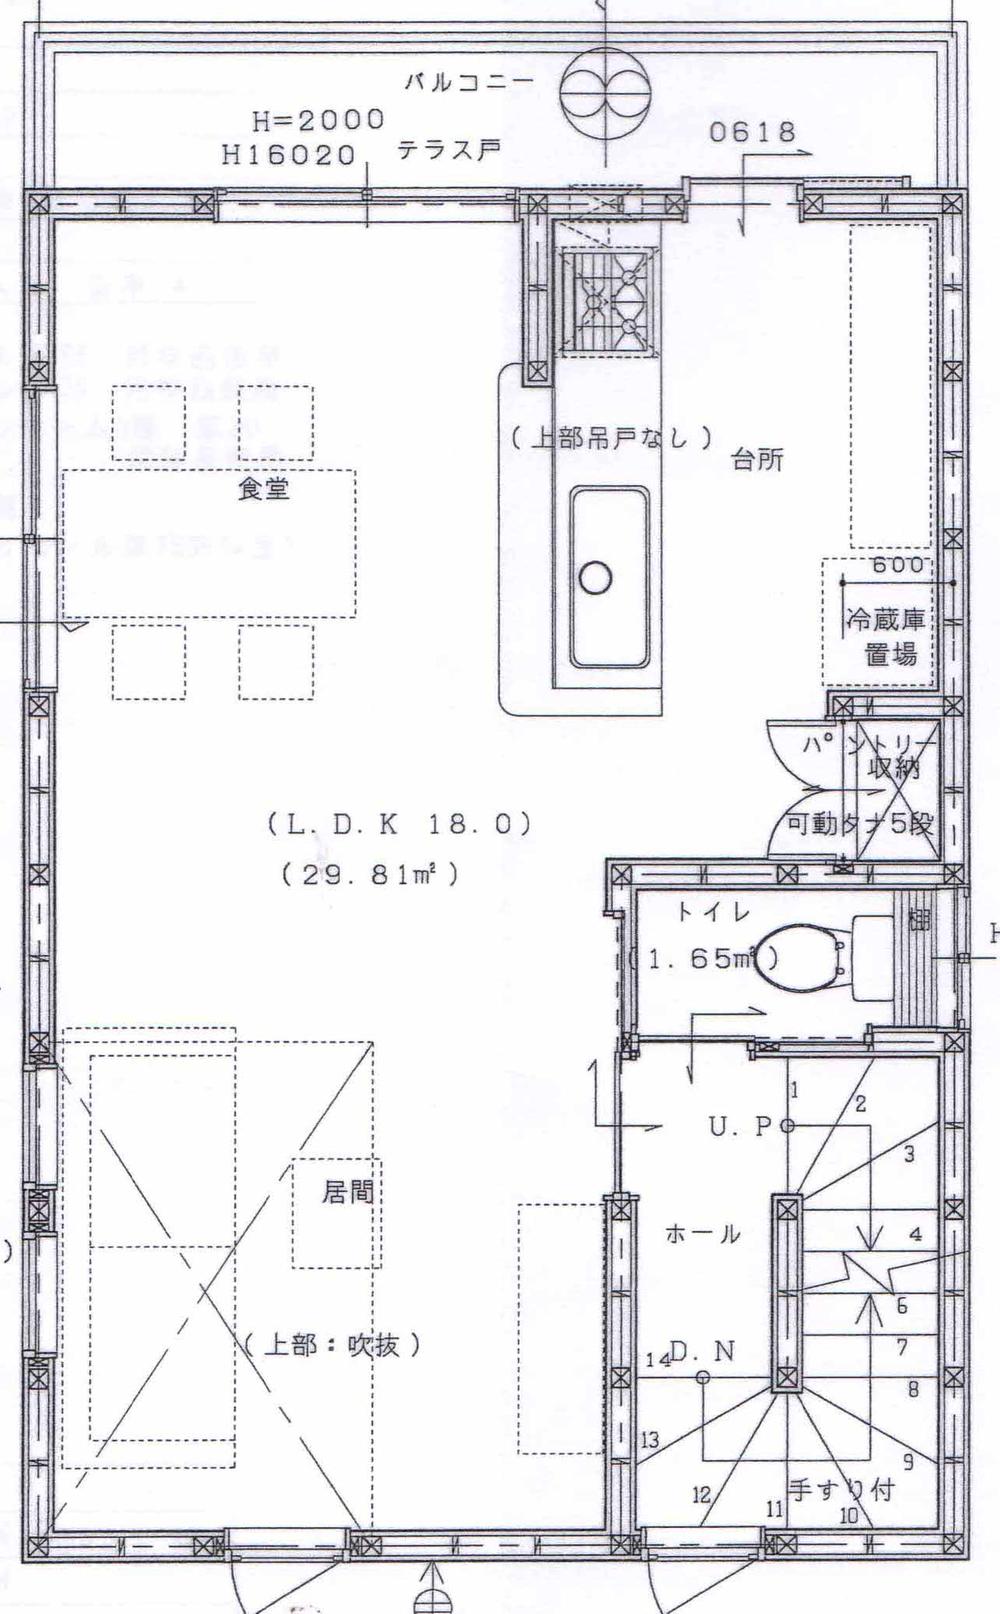 Floor plan. 35,800,000 yen, 4LDK, Land area 66.11 sq m , Building area 99 sq m 2 floor